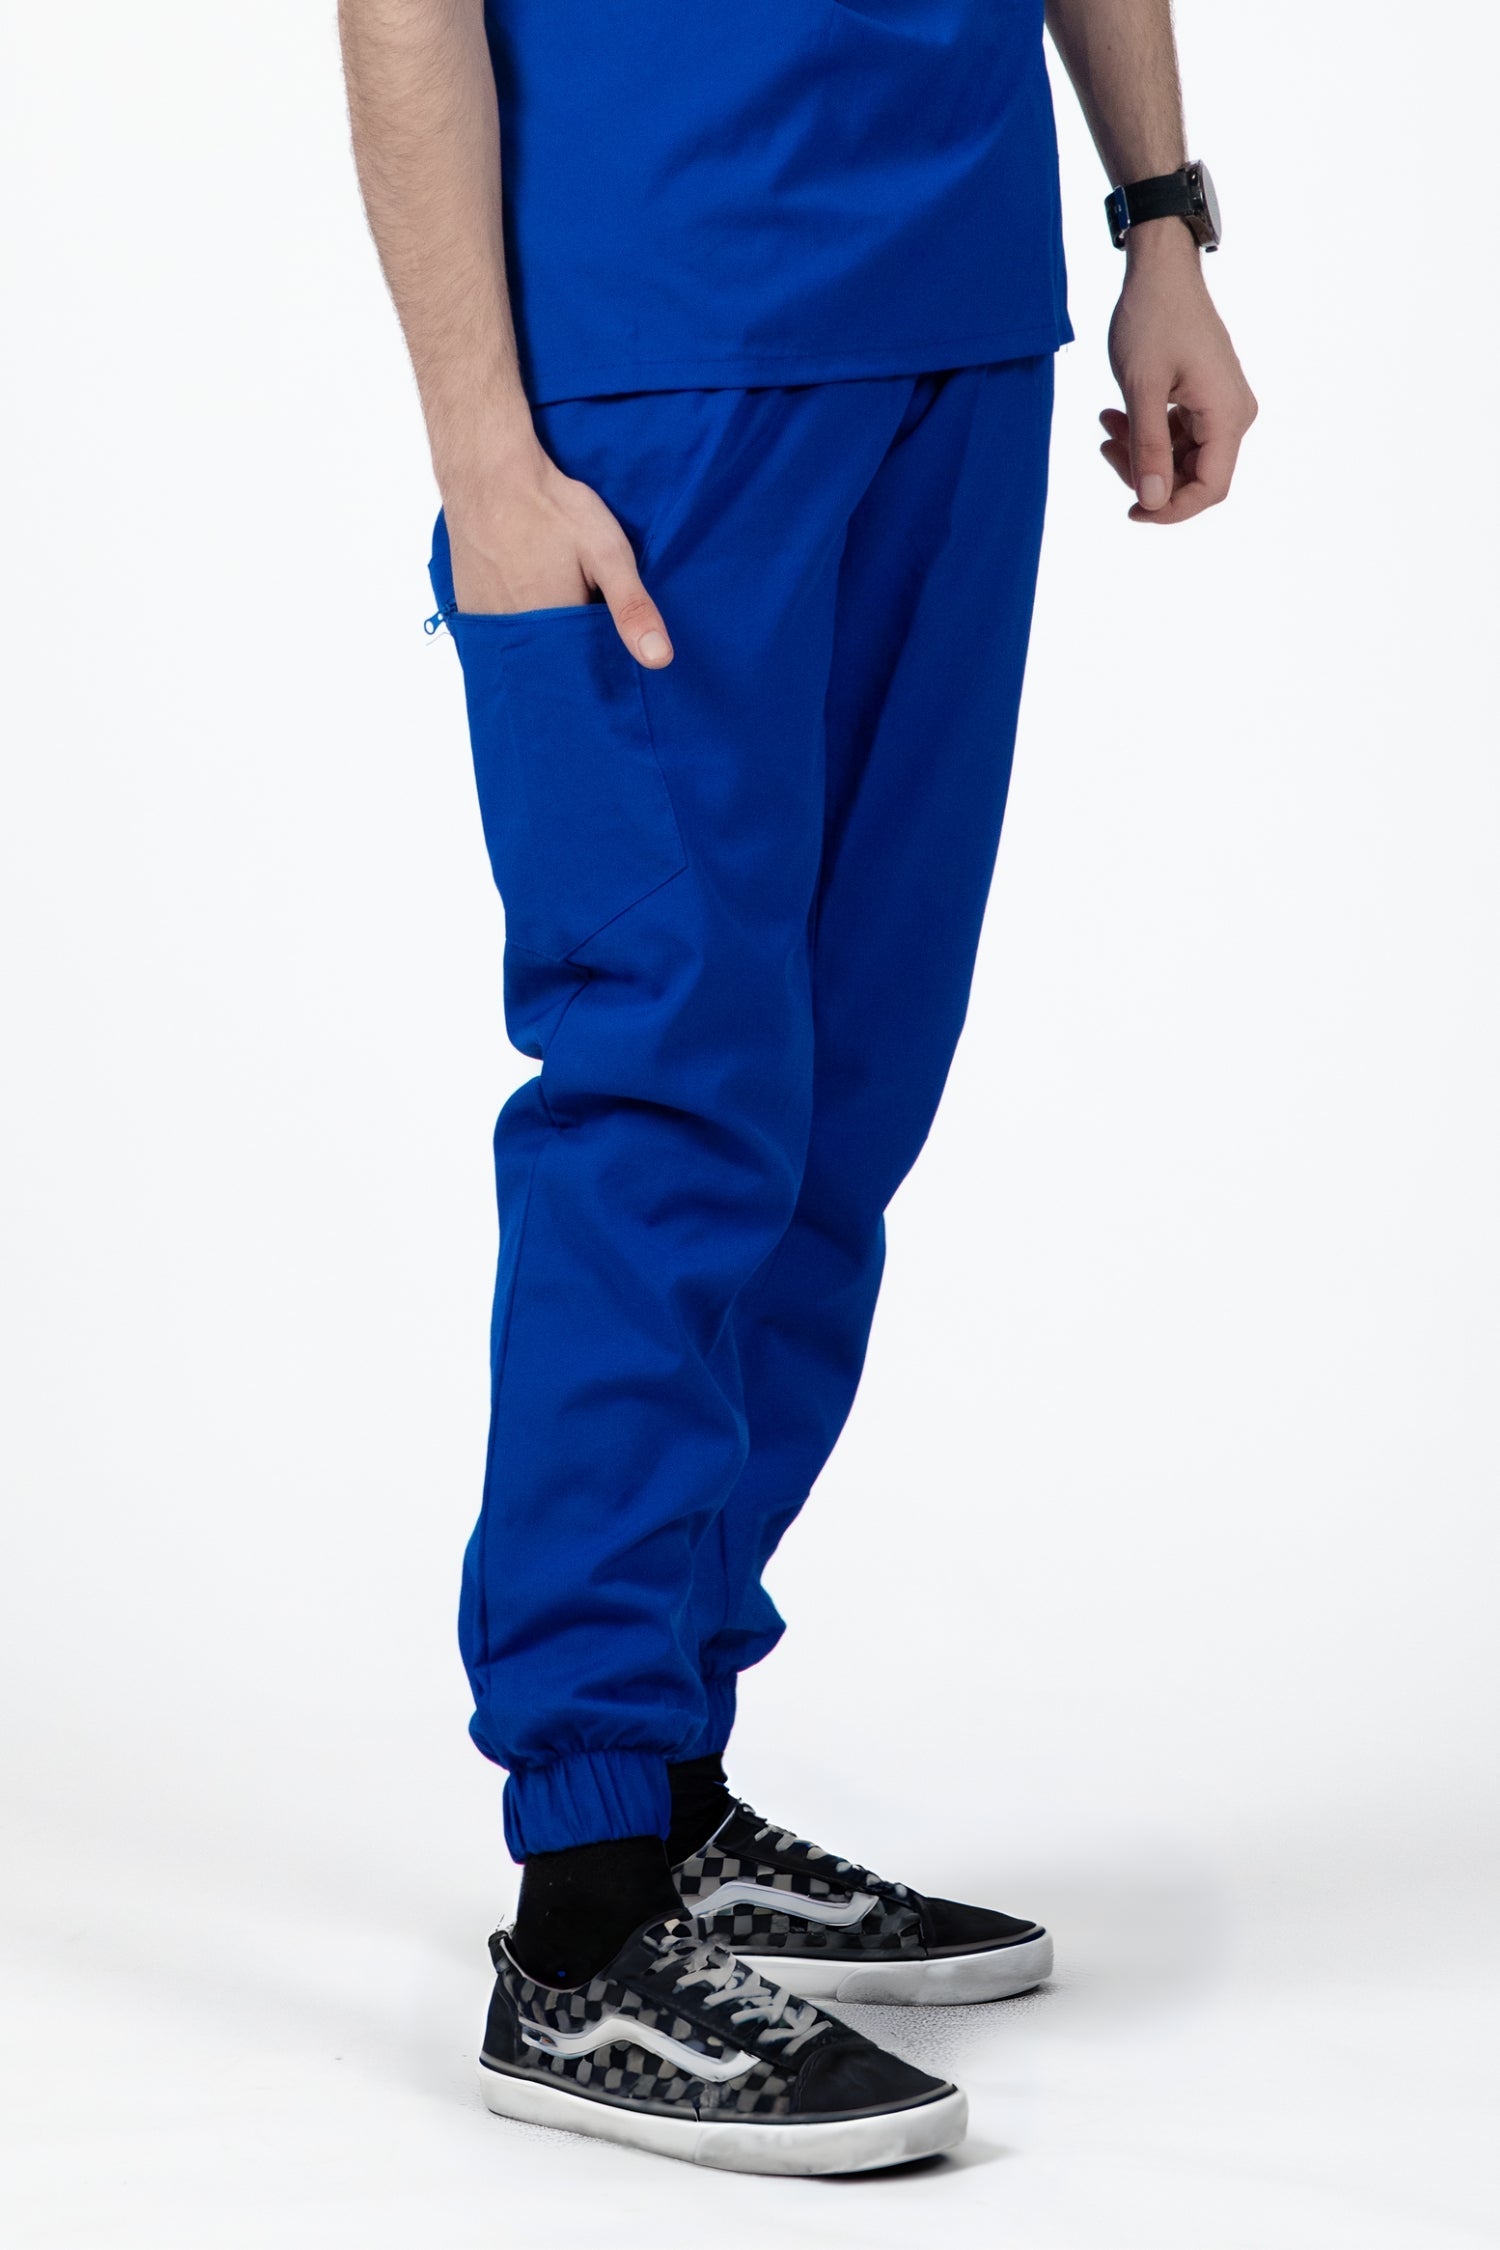 Homme en pantalon médical bleu royal, slimfit - tenues médicales élégantes et confortables